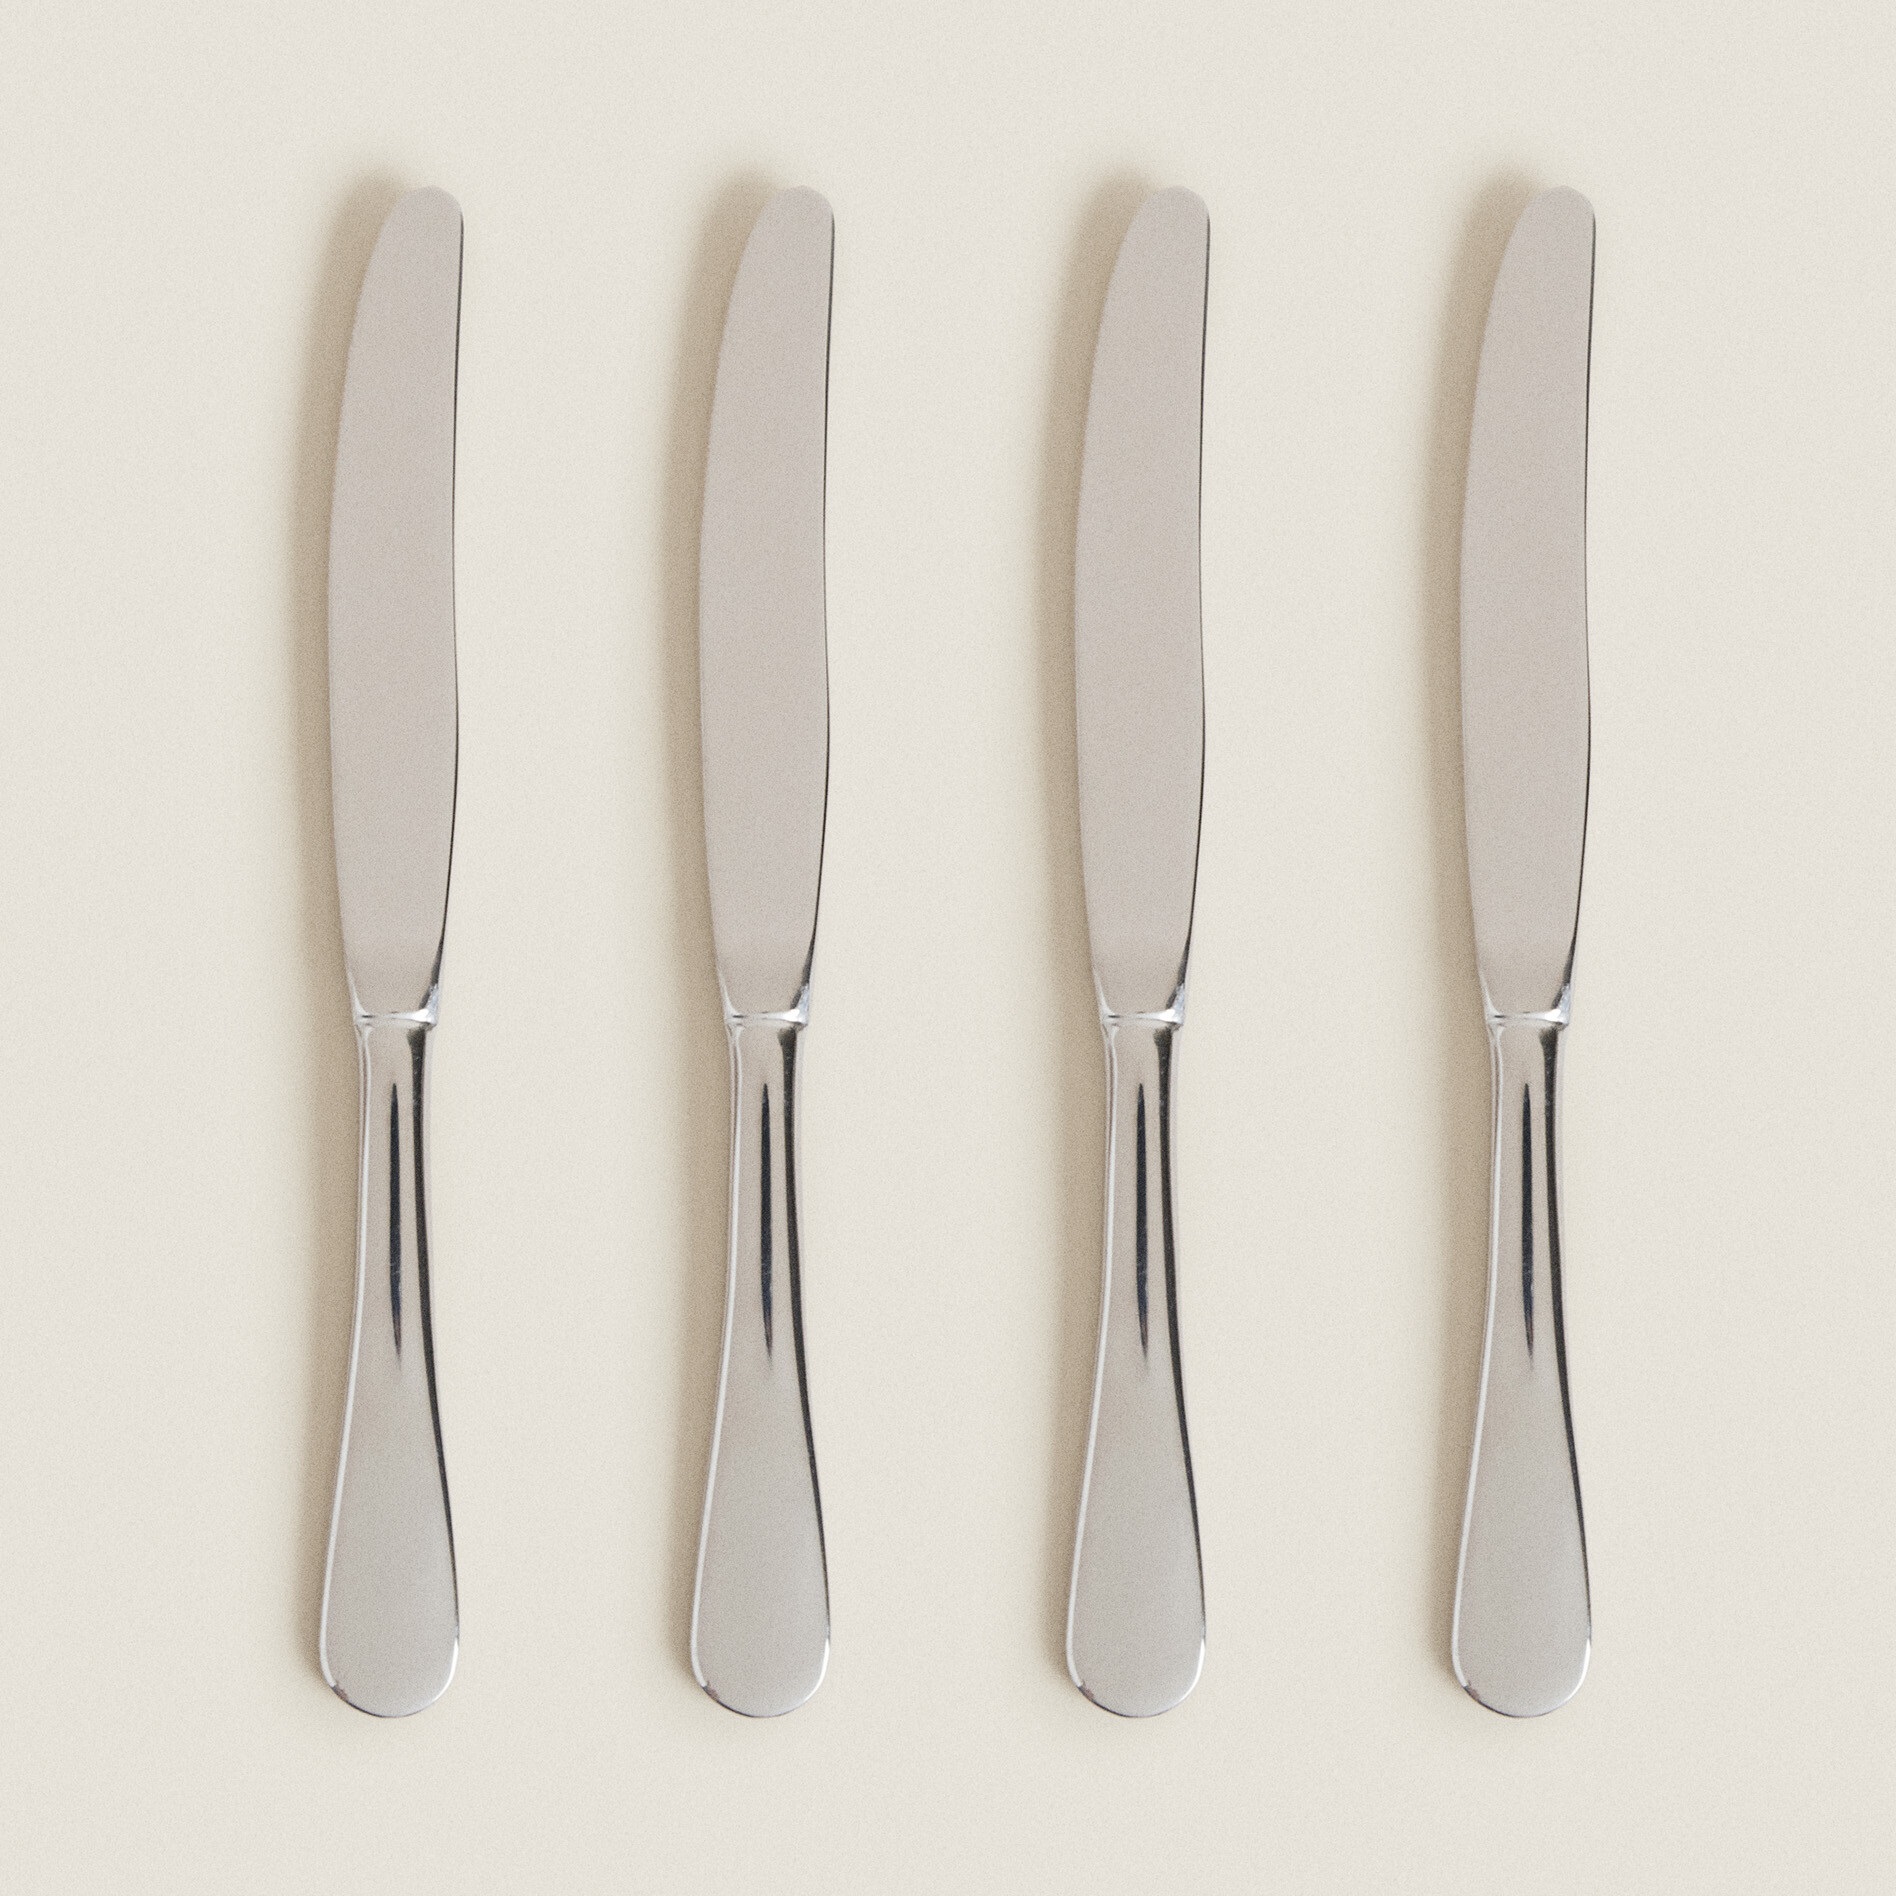 Набор ножей Zara Home 4-piece Classic Knife, 4 шт, серебристый набор ножей столовых marrakech